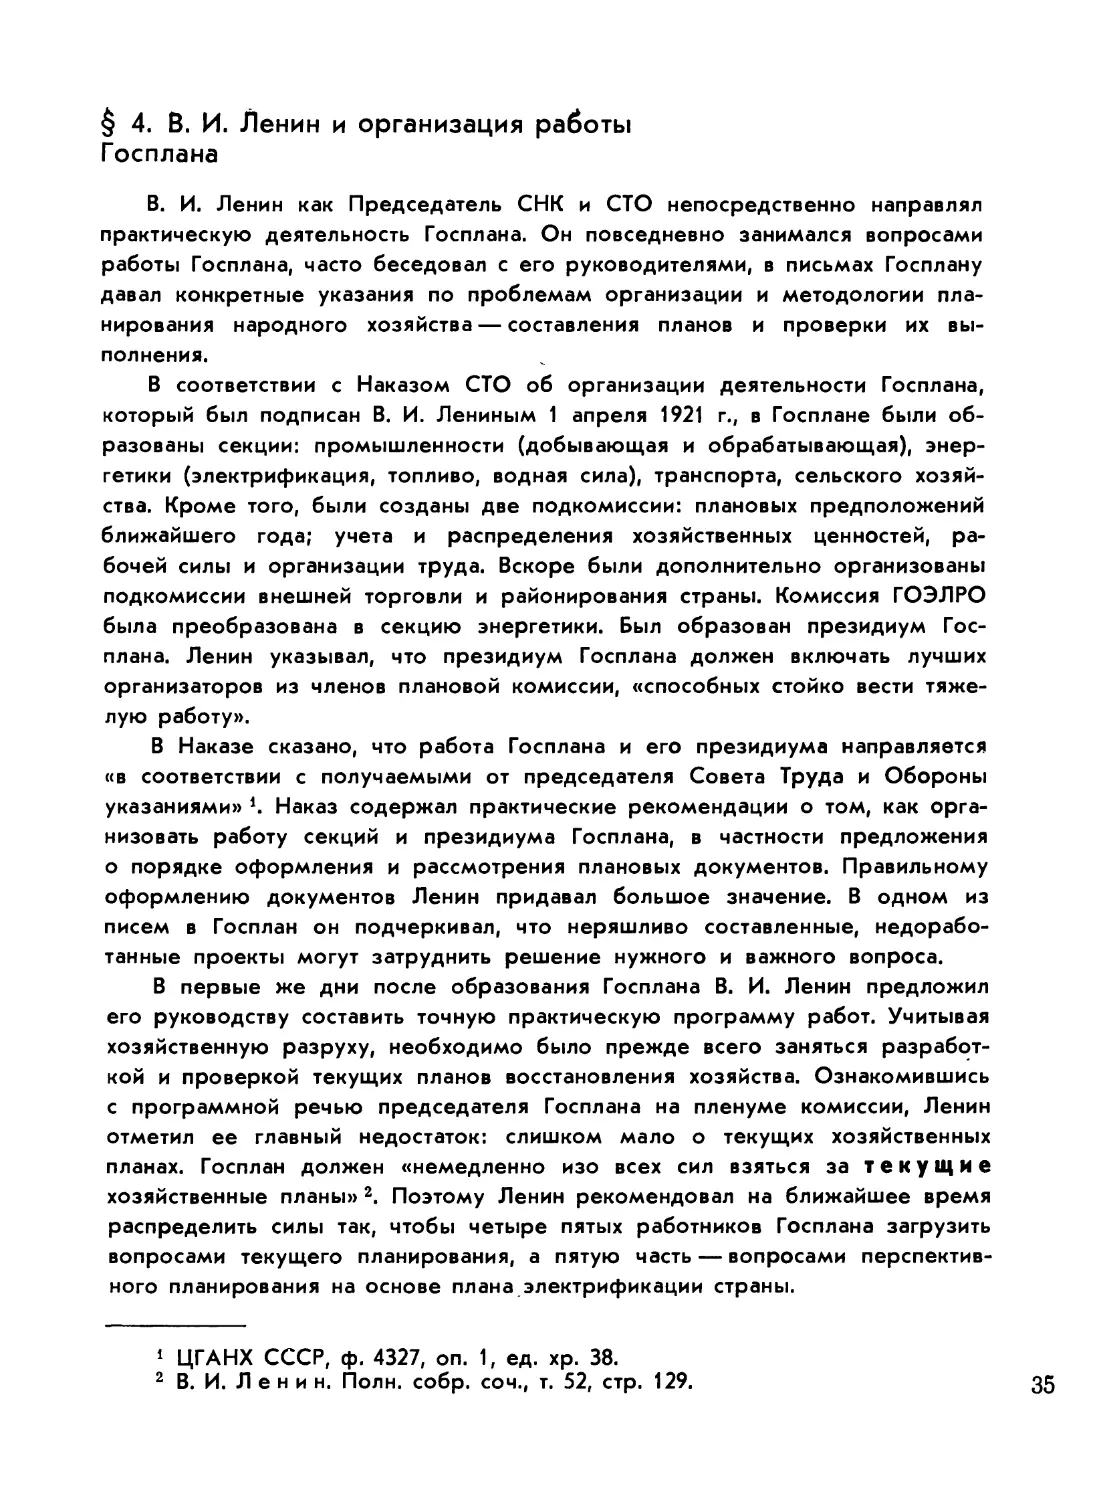 § 4. В. И. Ленин и организация работы Госплана